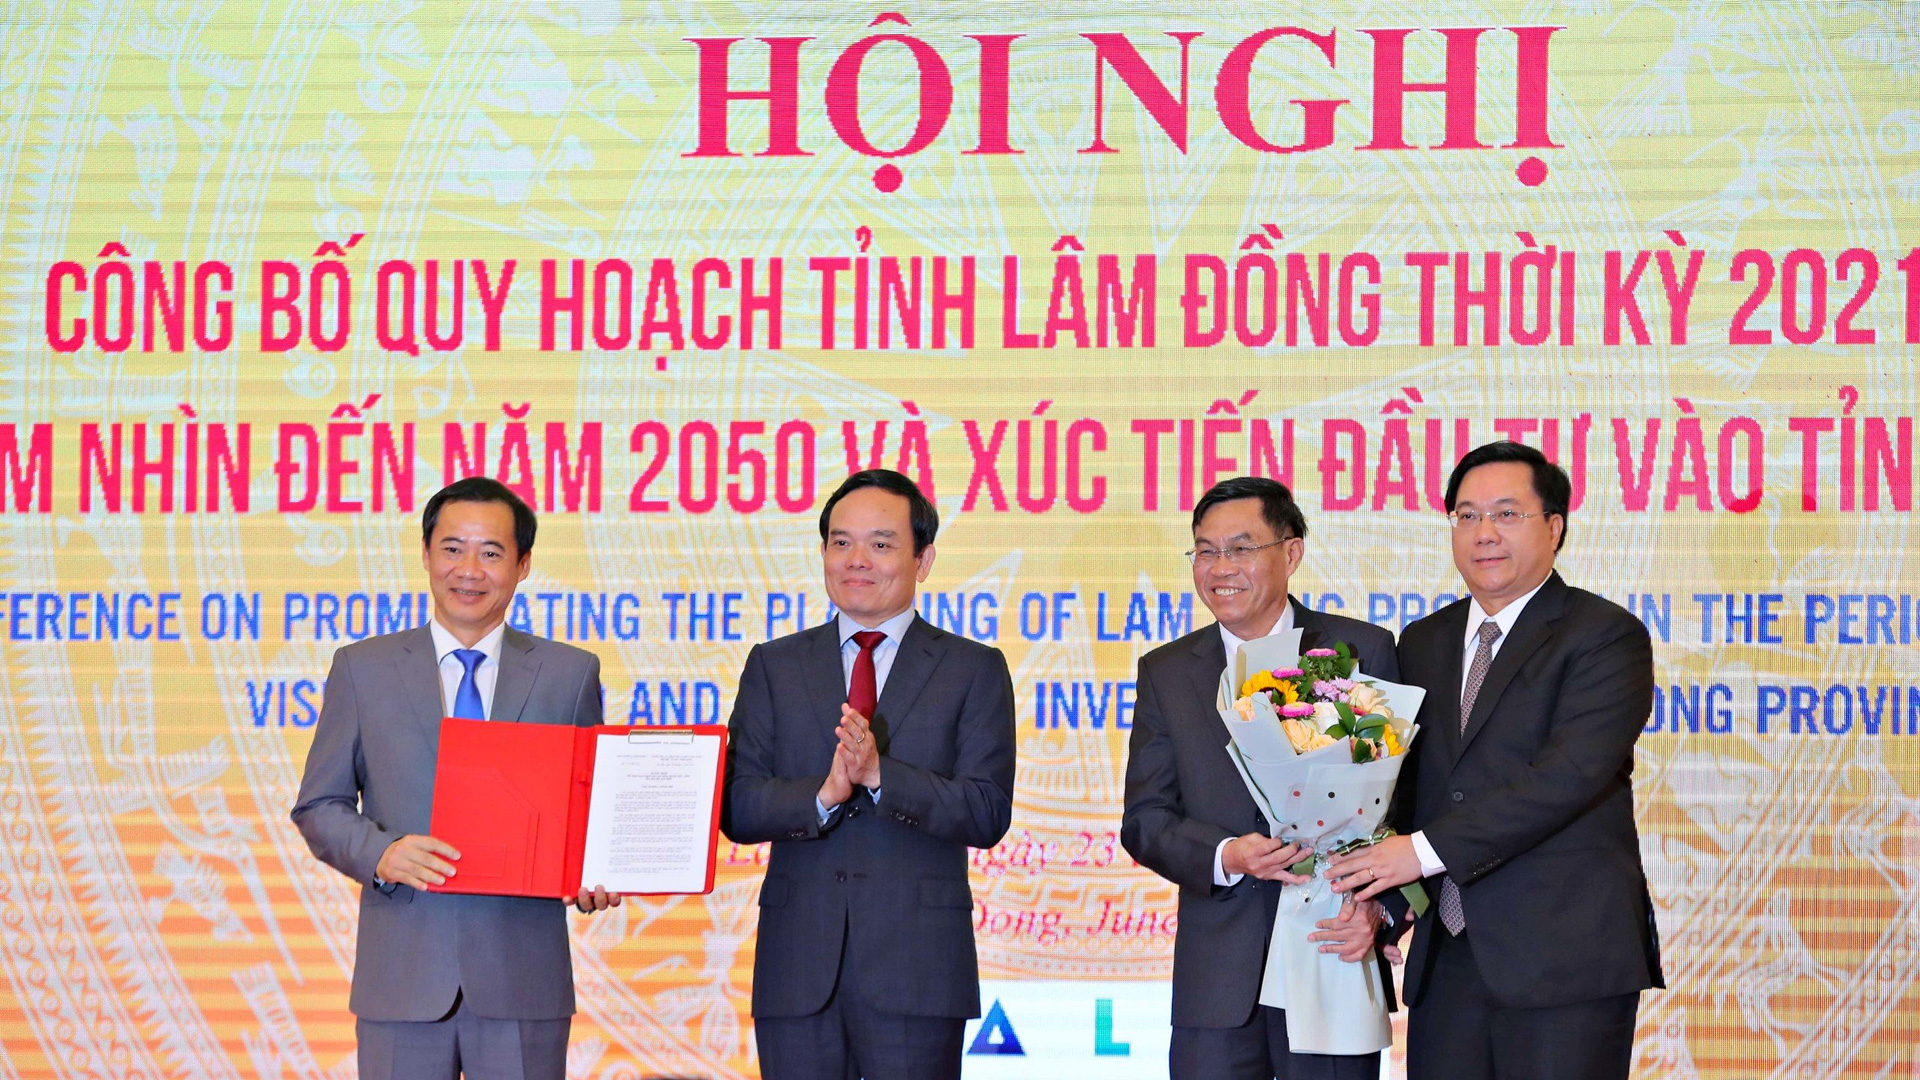 Lâm Đồng công bố Quy hoạch tỉnh thời kỳ 2021 - 2030, tầm nhìn đến năm 2050 và xúc tiến đầu tư